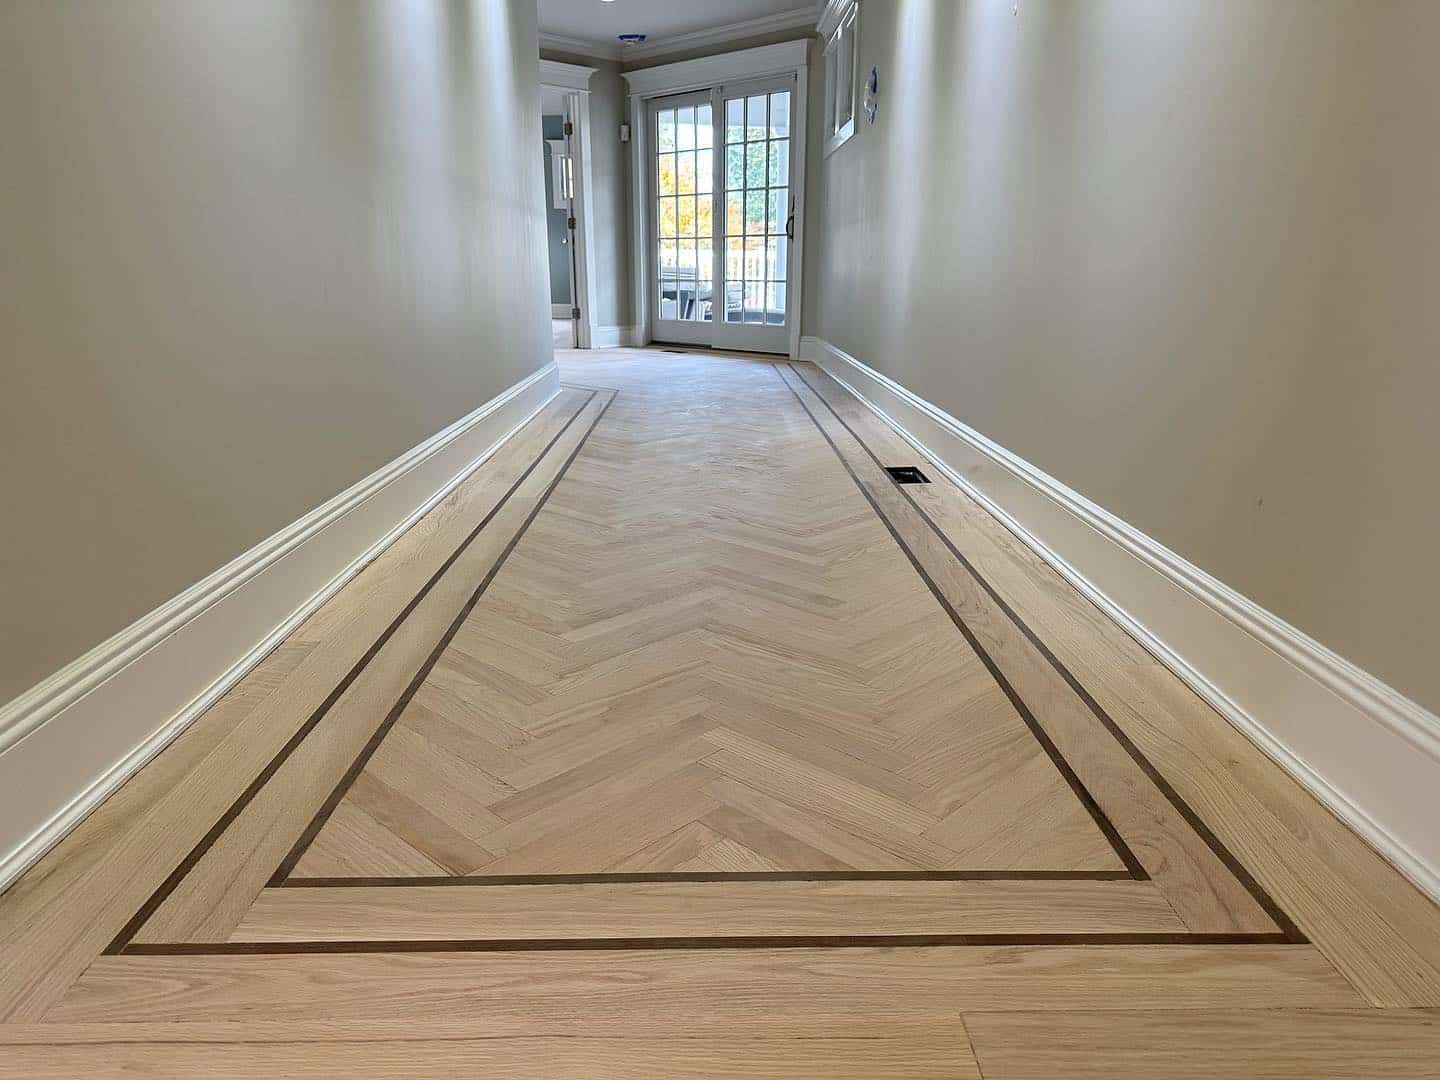 White Oak Herringbone wood flooring installed.